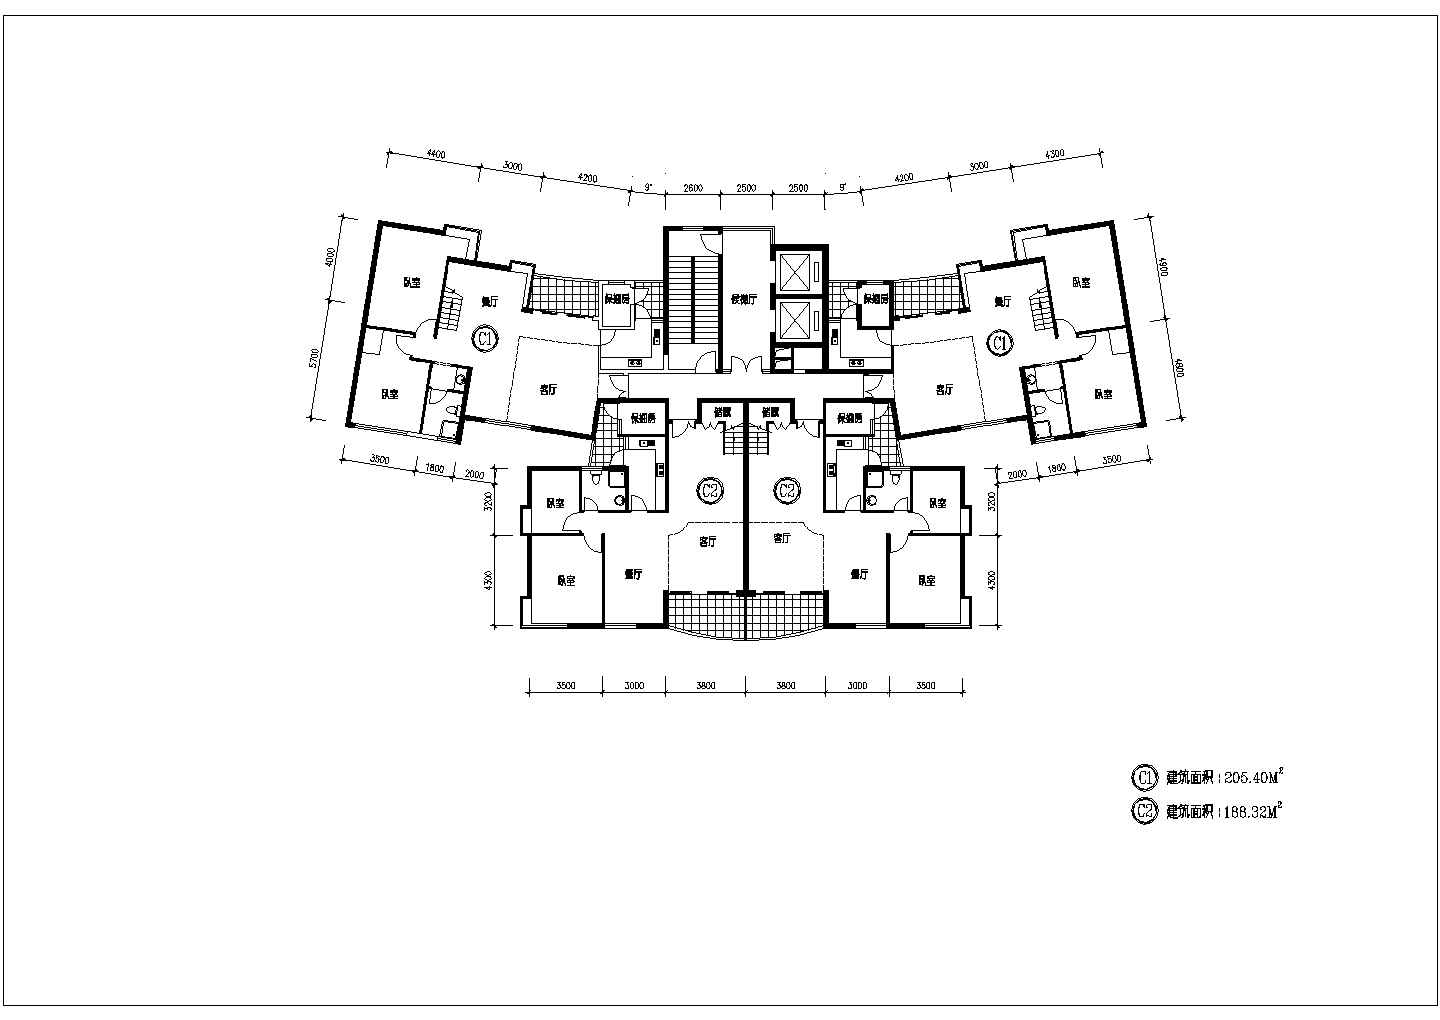 户型平面图设计_3室2厅【C2-188.32平】 楼中楼户型-5室2厅【C1-205.4平】